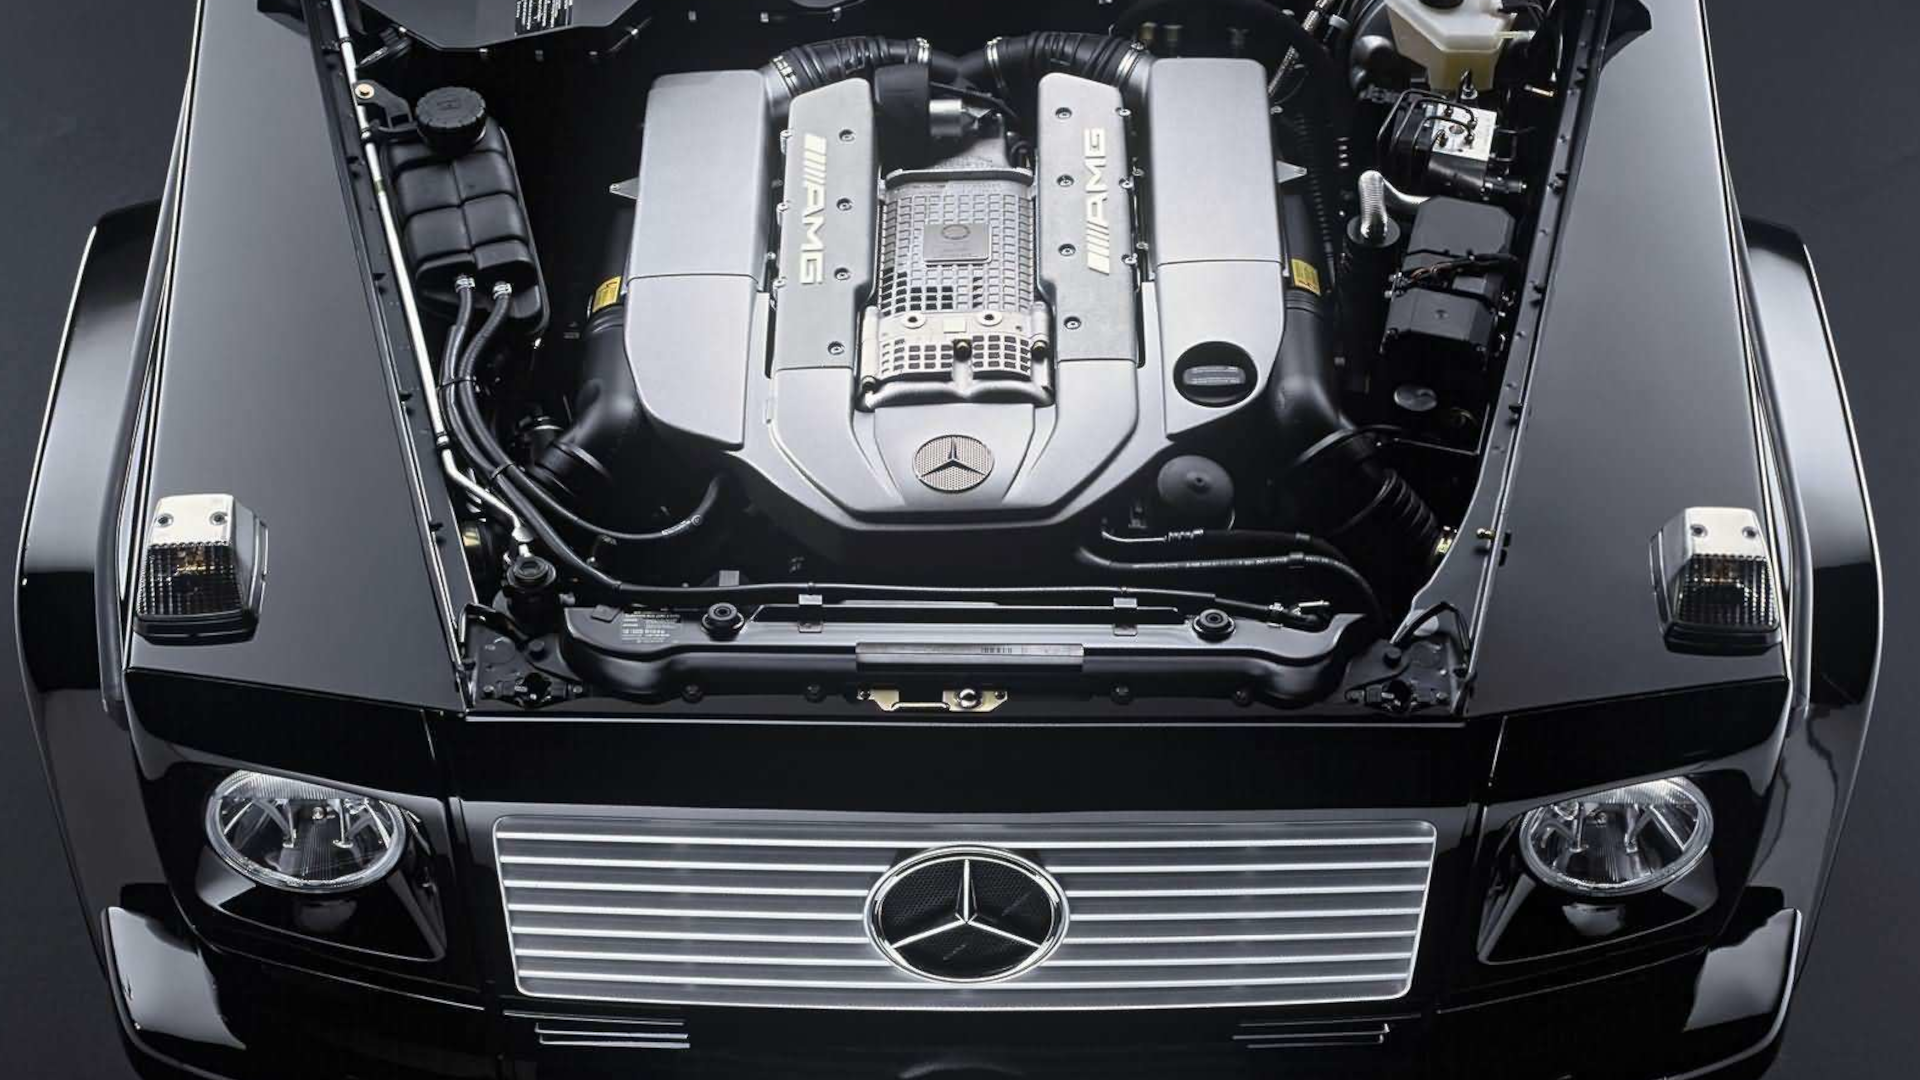 2005 Mercedes-Benz G55 AMG engine